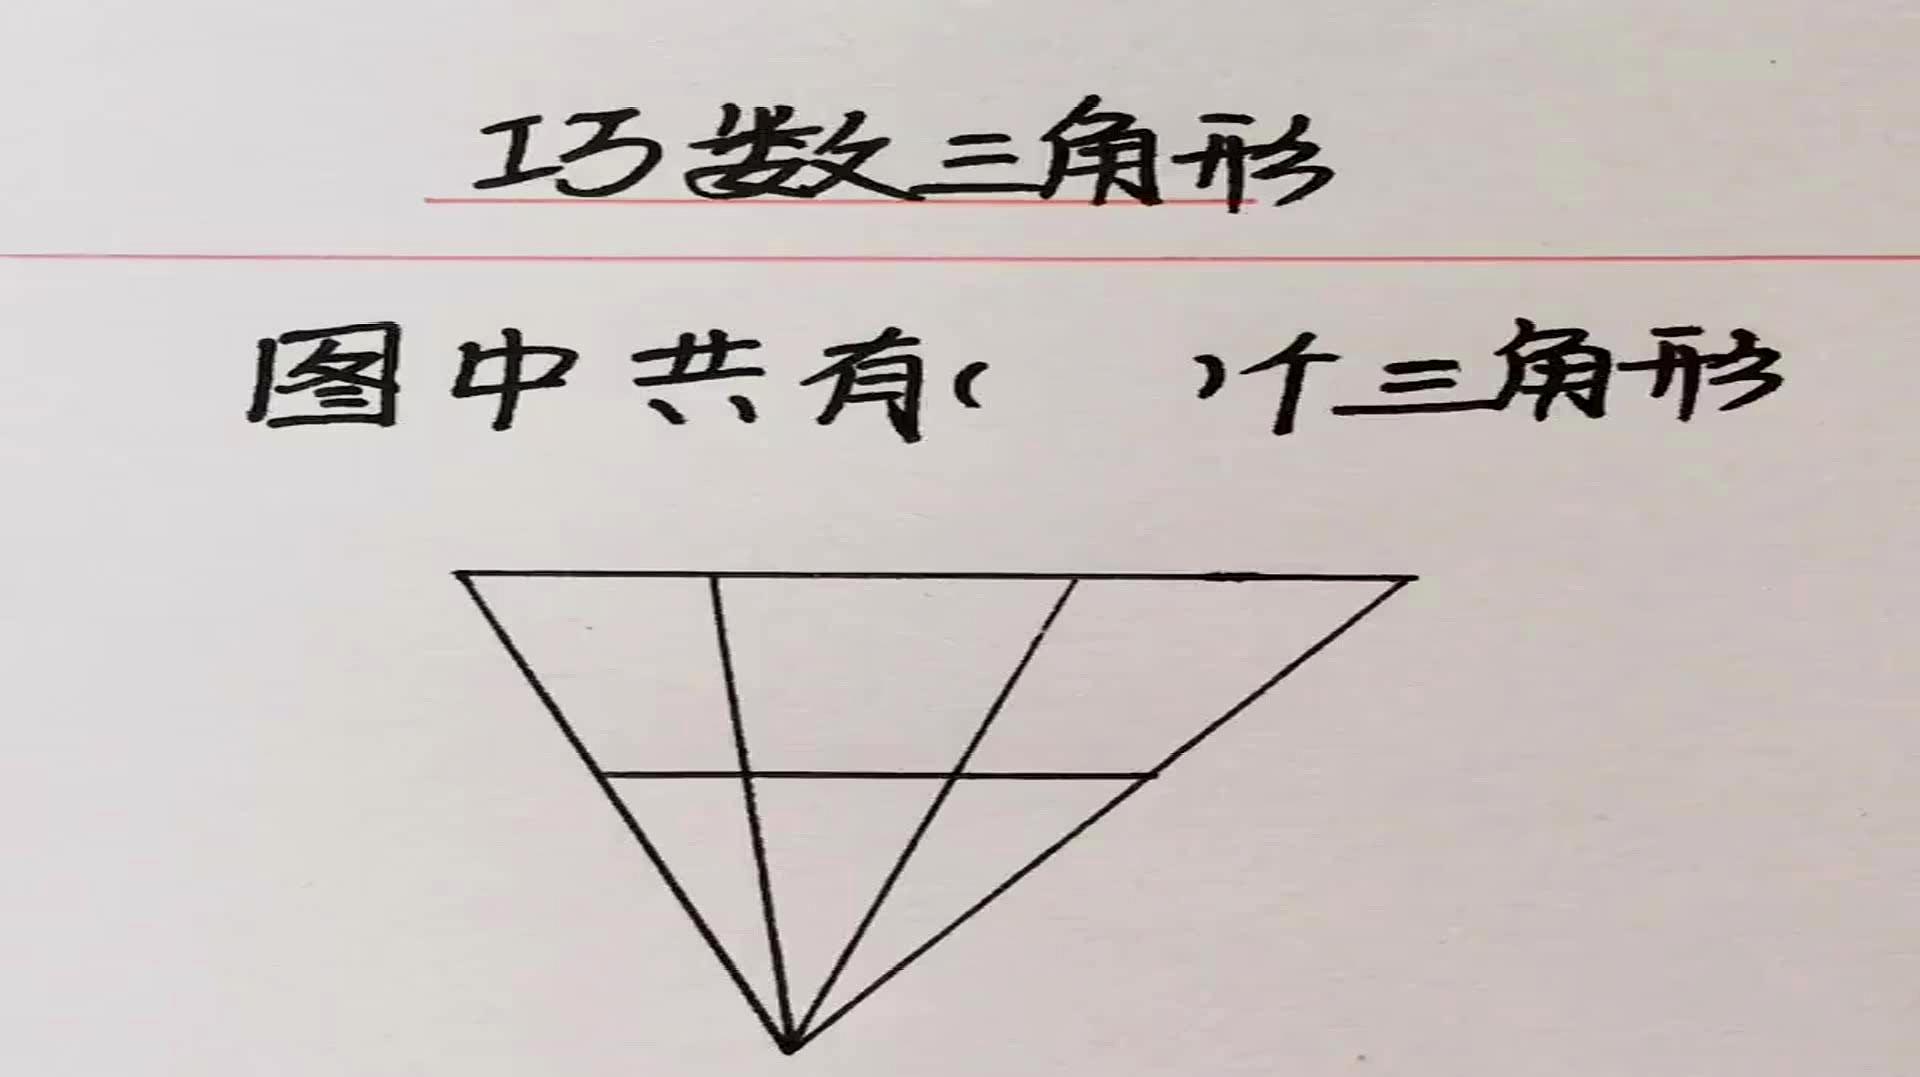 速算技巧,巧数三角形,数角的两种方法,用对方法真是太简单了